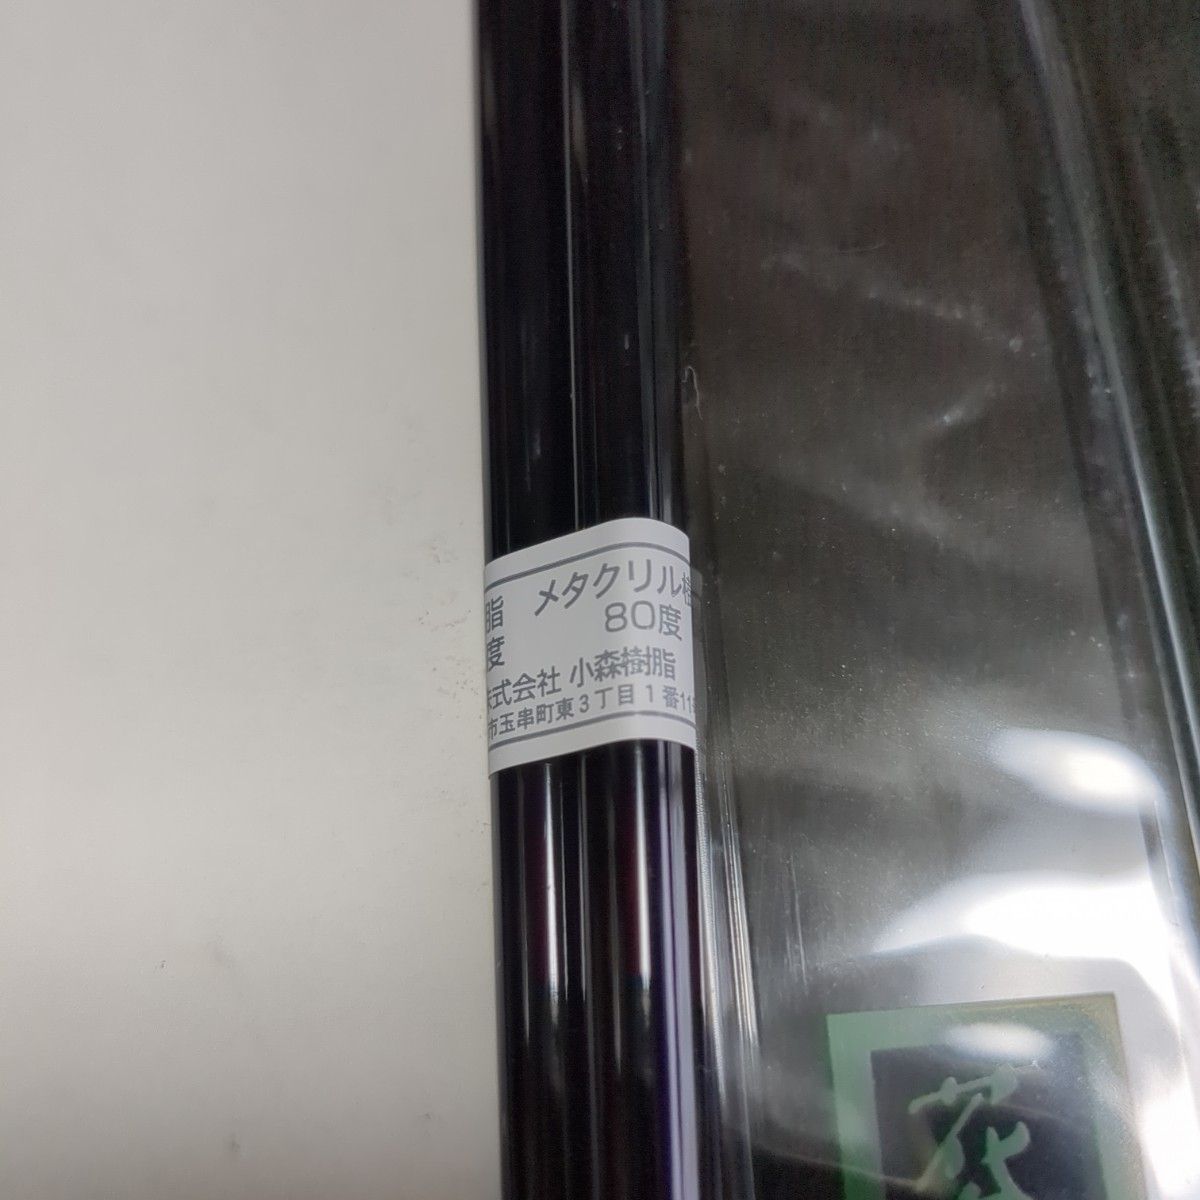 新品 箸・箸箱セット 10個 花鳥風月 22.5cm 黒 スチロール樹脂製